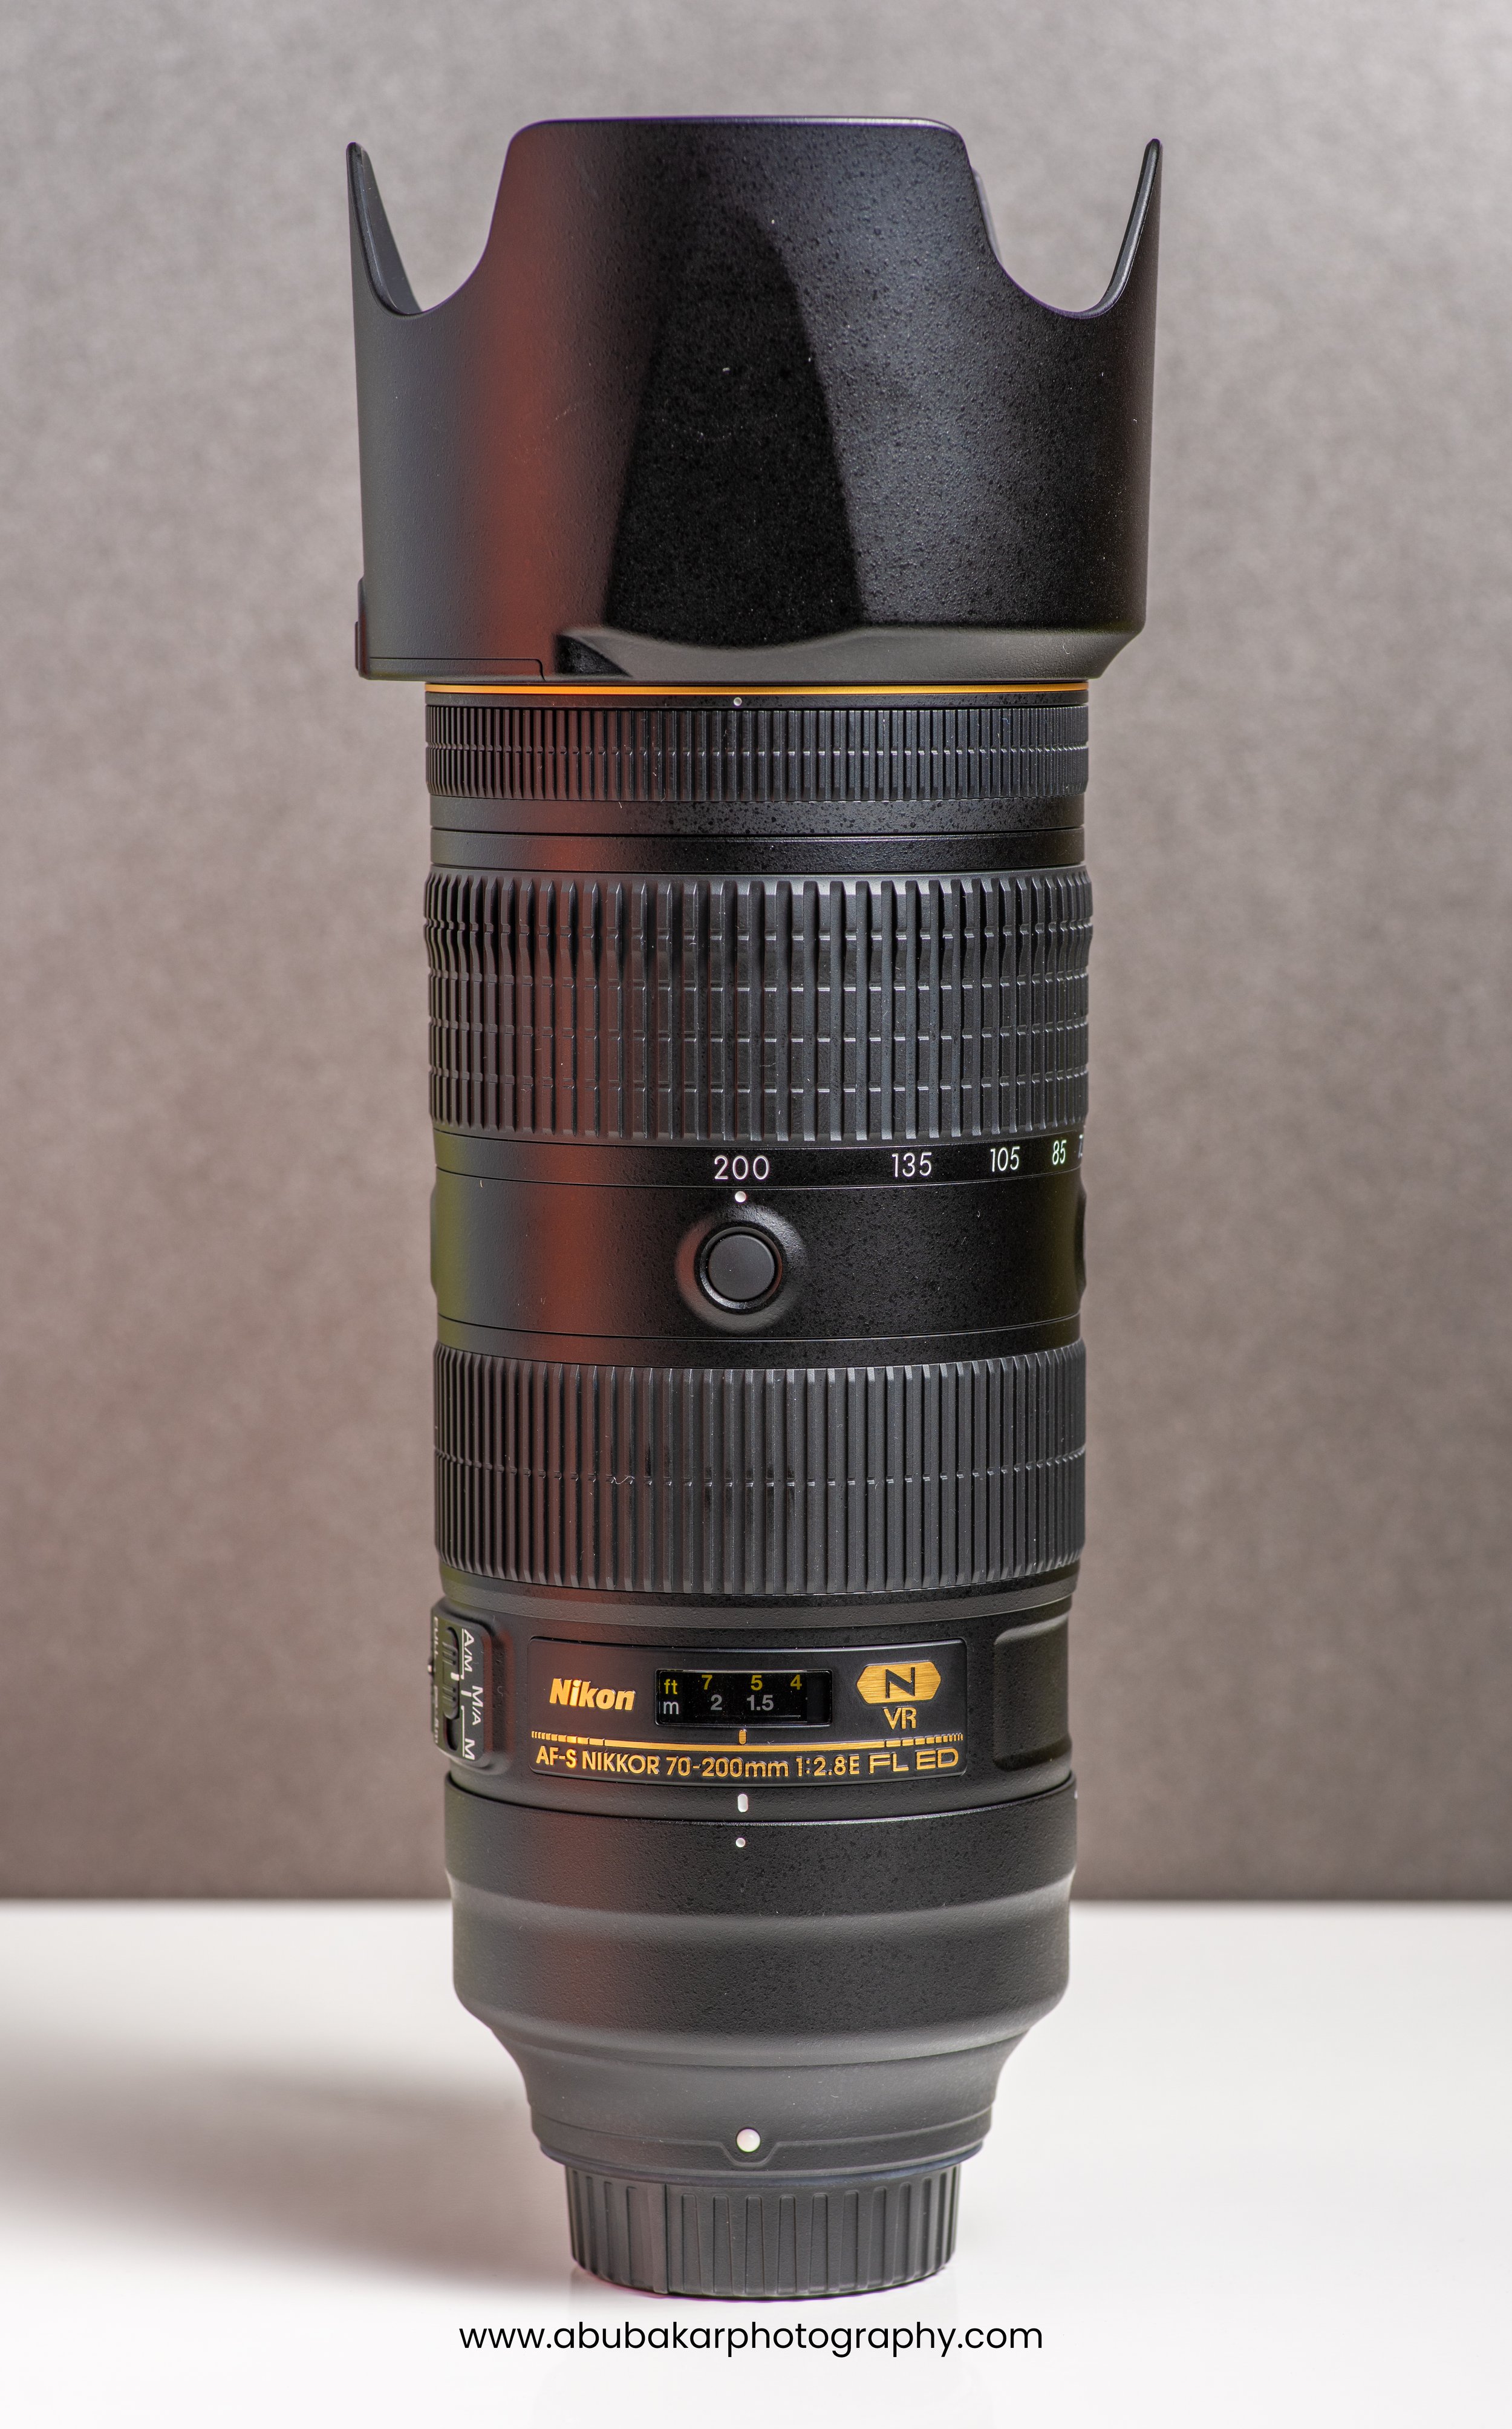 Nikon 70-200mm F2.8 FL ED VR Lens 